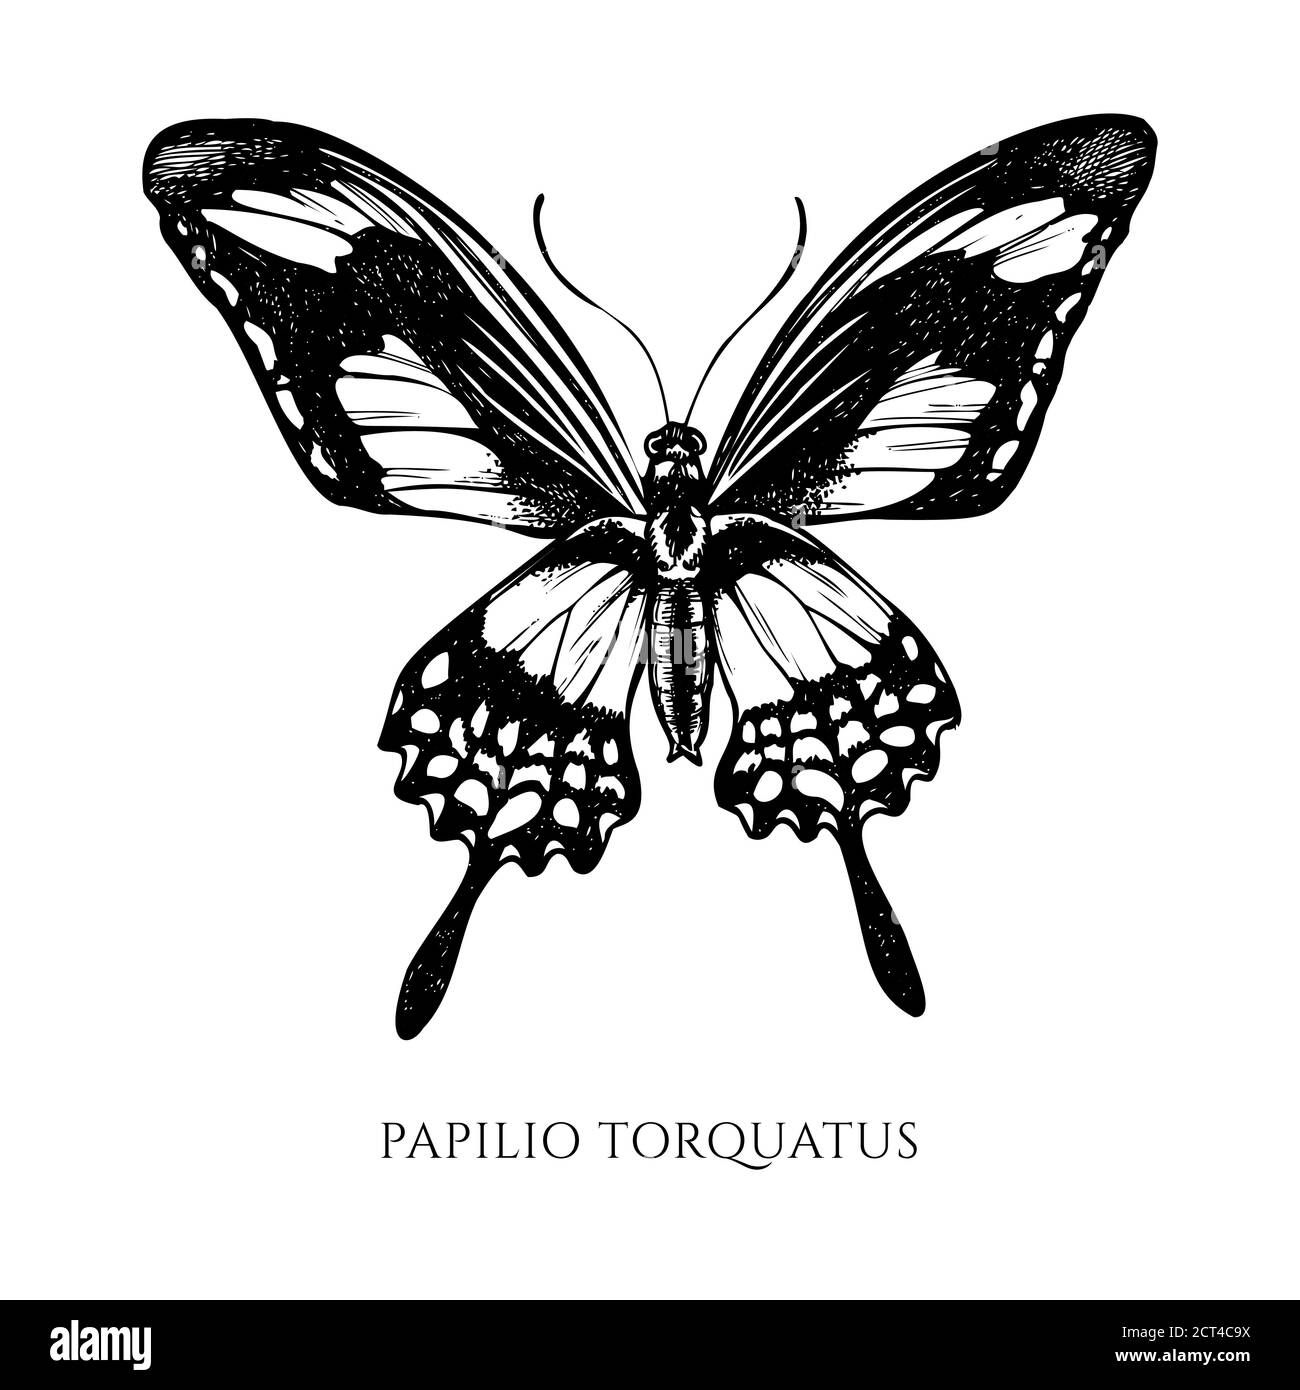 Ensemble vectoriel de papillio torquatus noir et blanc dessiné à la main Illustration de Vecteur